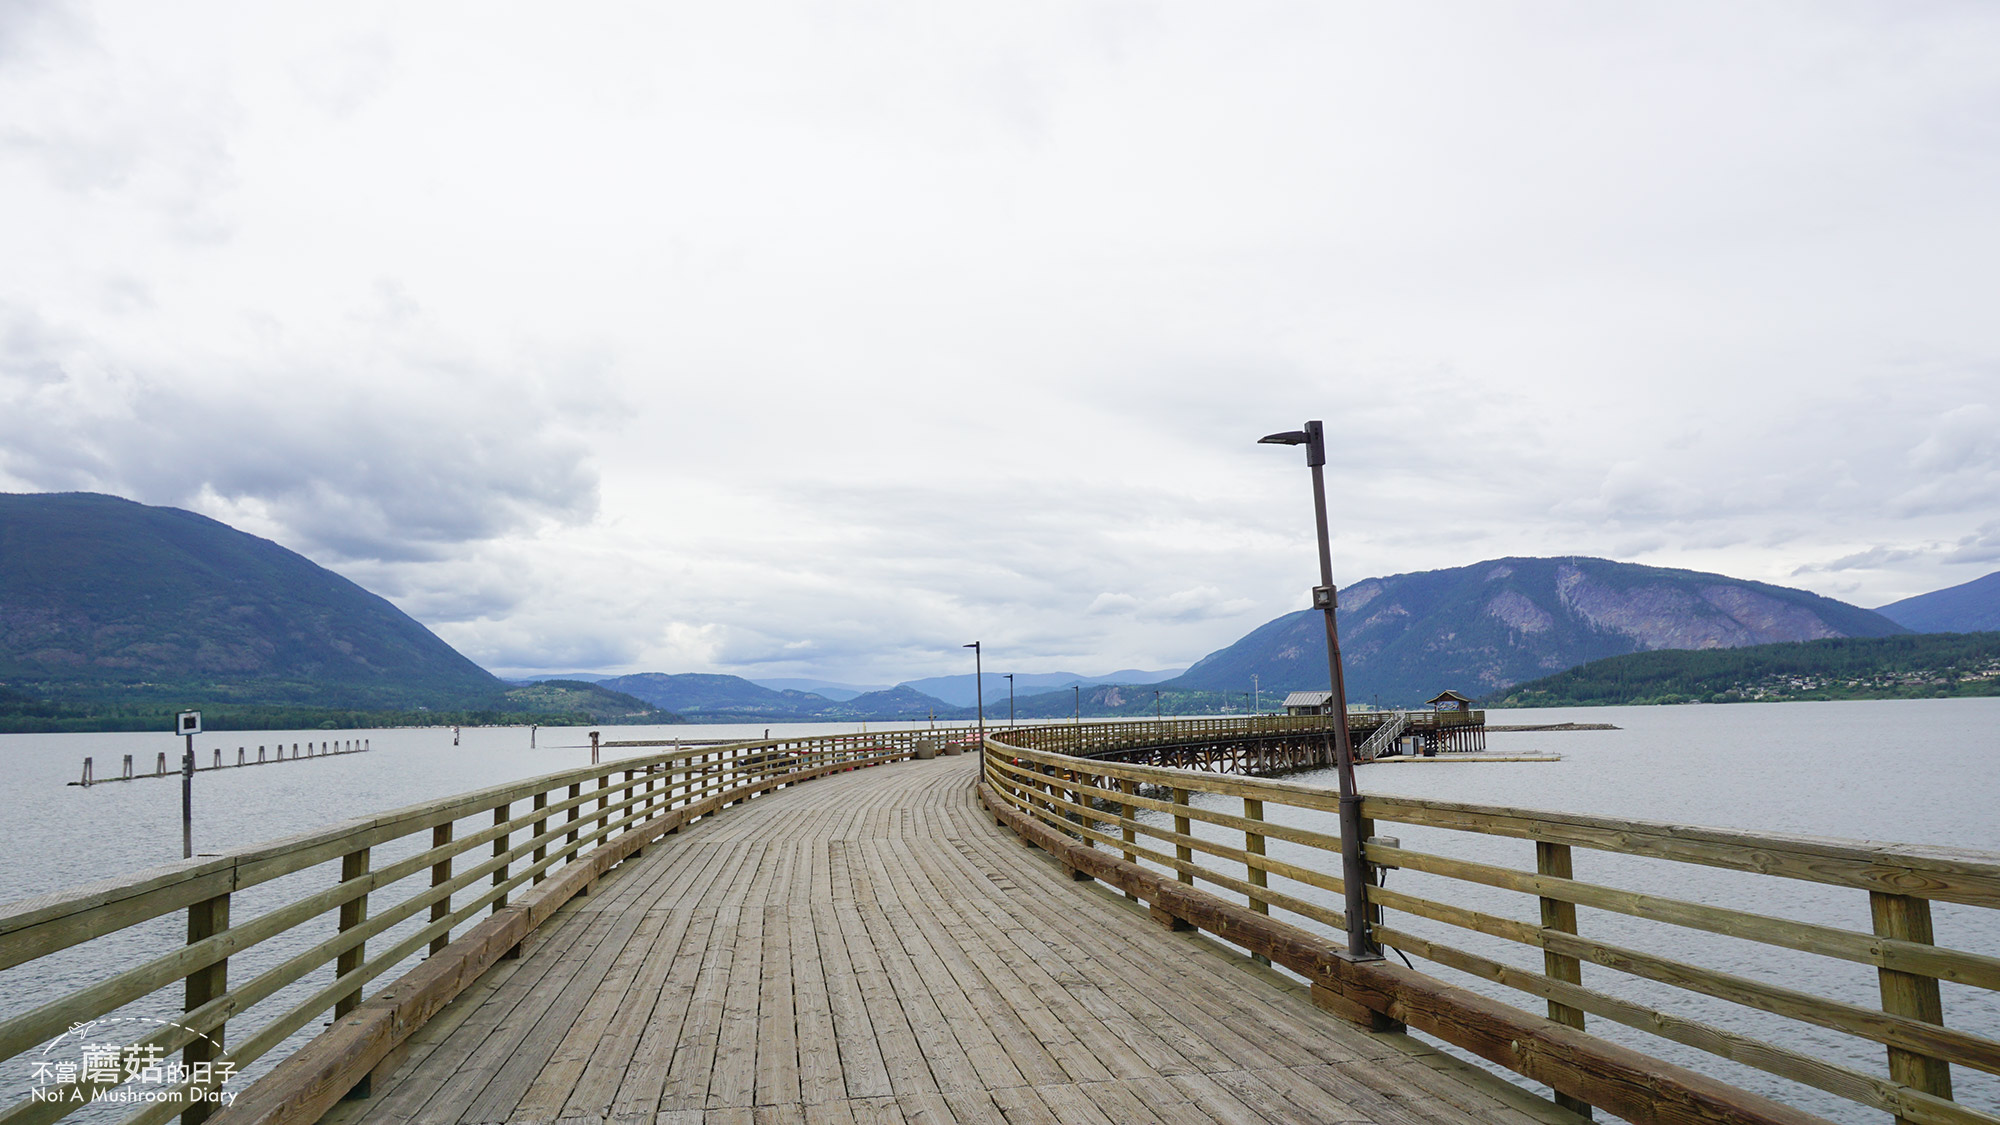 溫哥華 班夫 科隆那 薩蒙阿姆 洛磯山 加拿大 Vancouver Banff Kelowna Salmon Arm Rocky Mountain Canada